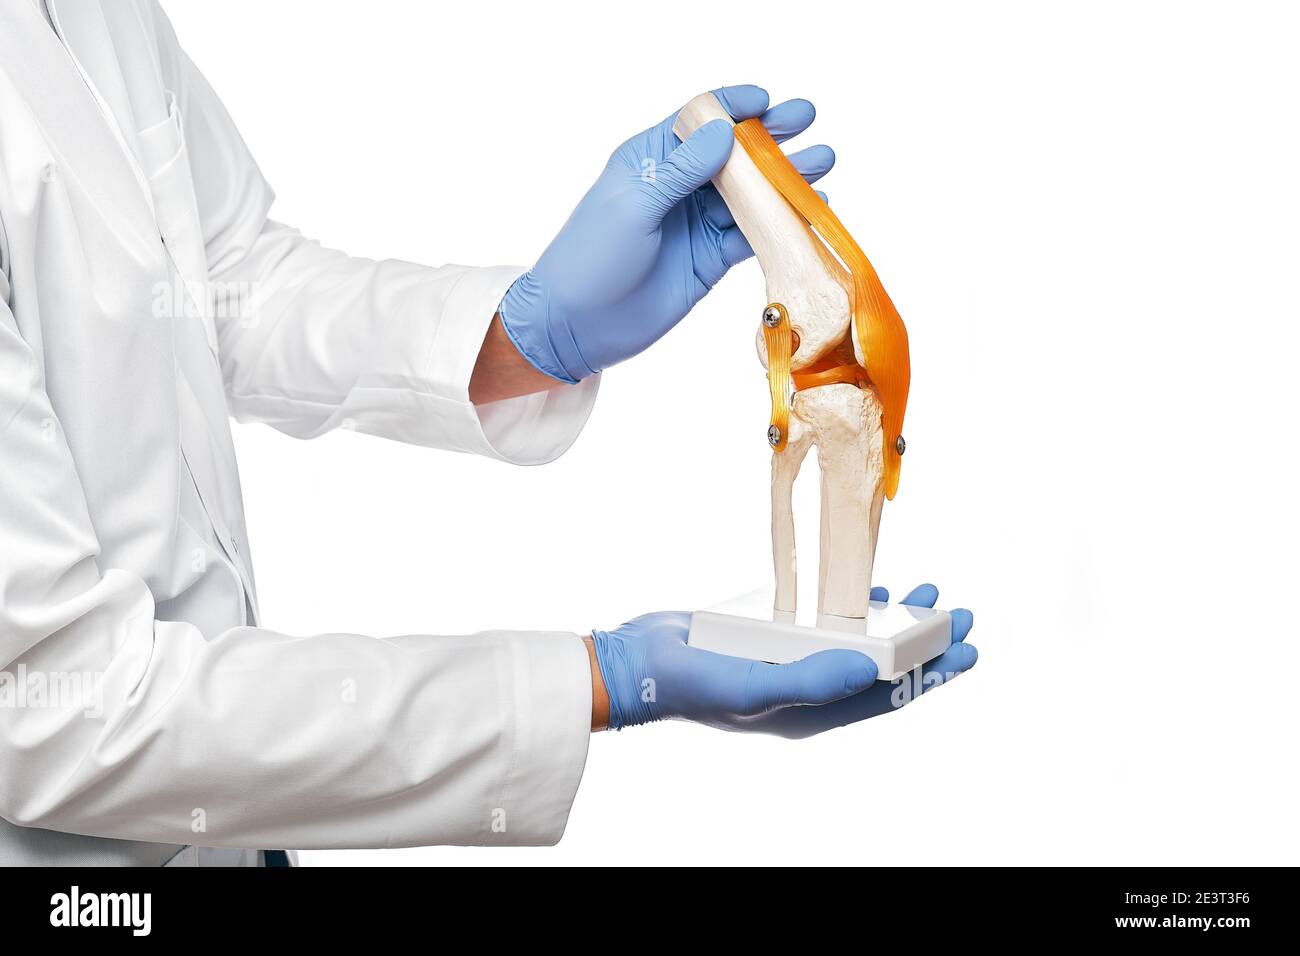 Der Arzt hält ein anatomisches Modell des menschlichen Kniegelenks in der Hand, Nahaufnahme. Isoliert auf weißem Hintergrund Stockfoto